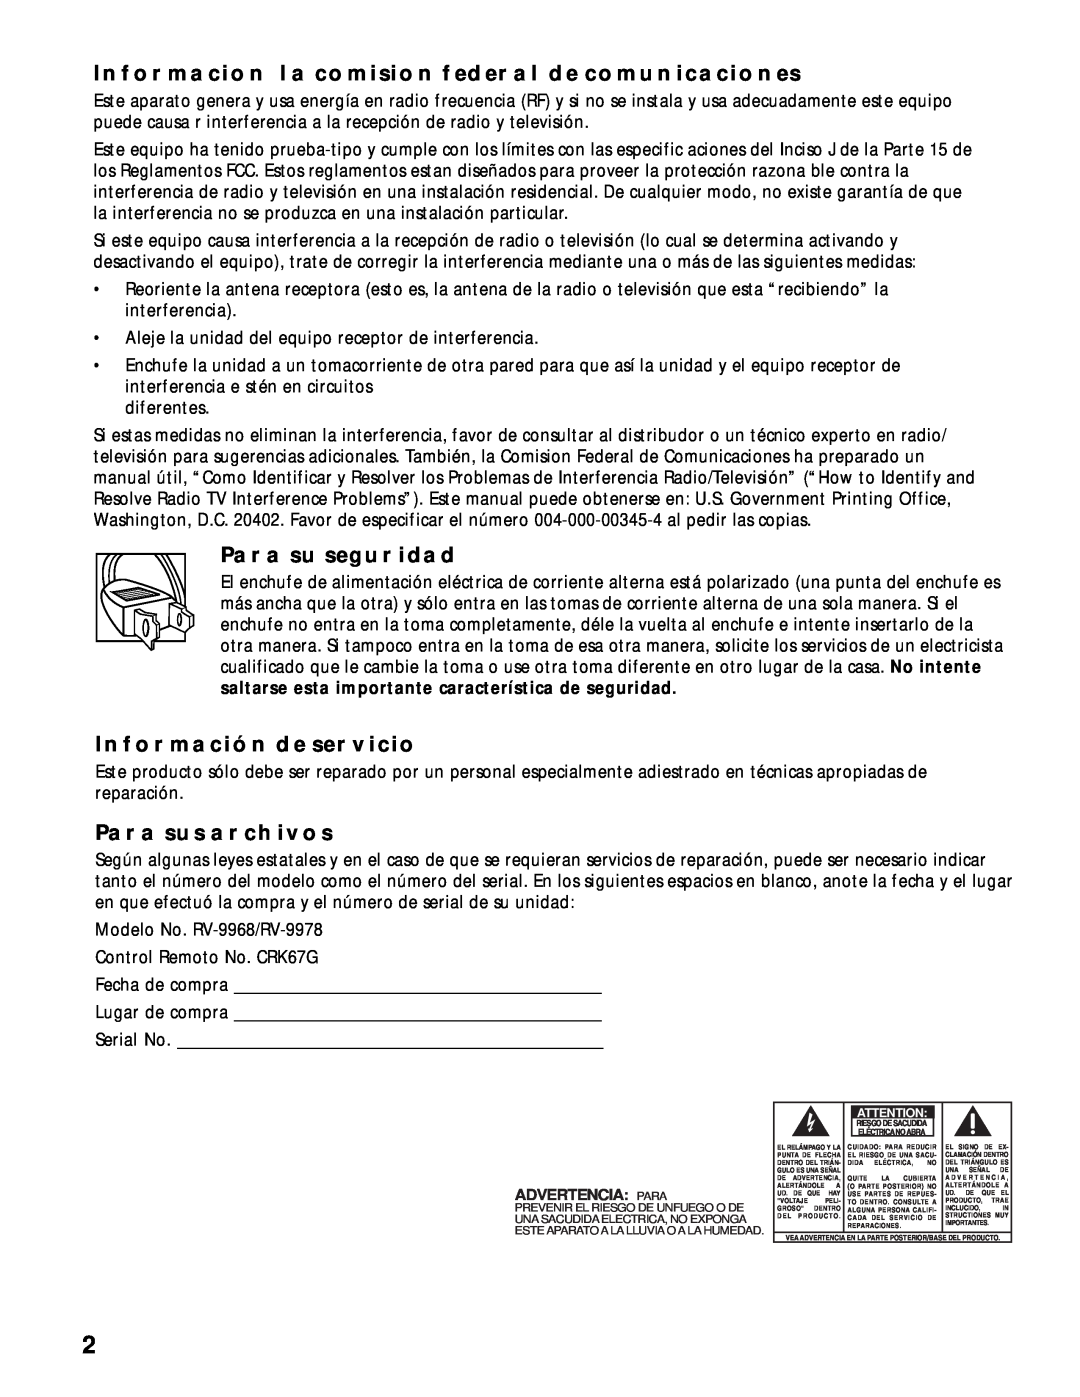 RCA RV-9968, RV-9978 manual Informacion La Comision Federal De Comunicaciones, Para Su Seguridad, Información De Servicio 